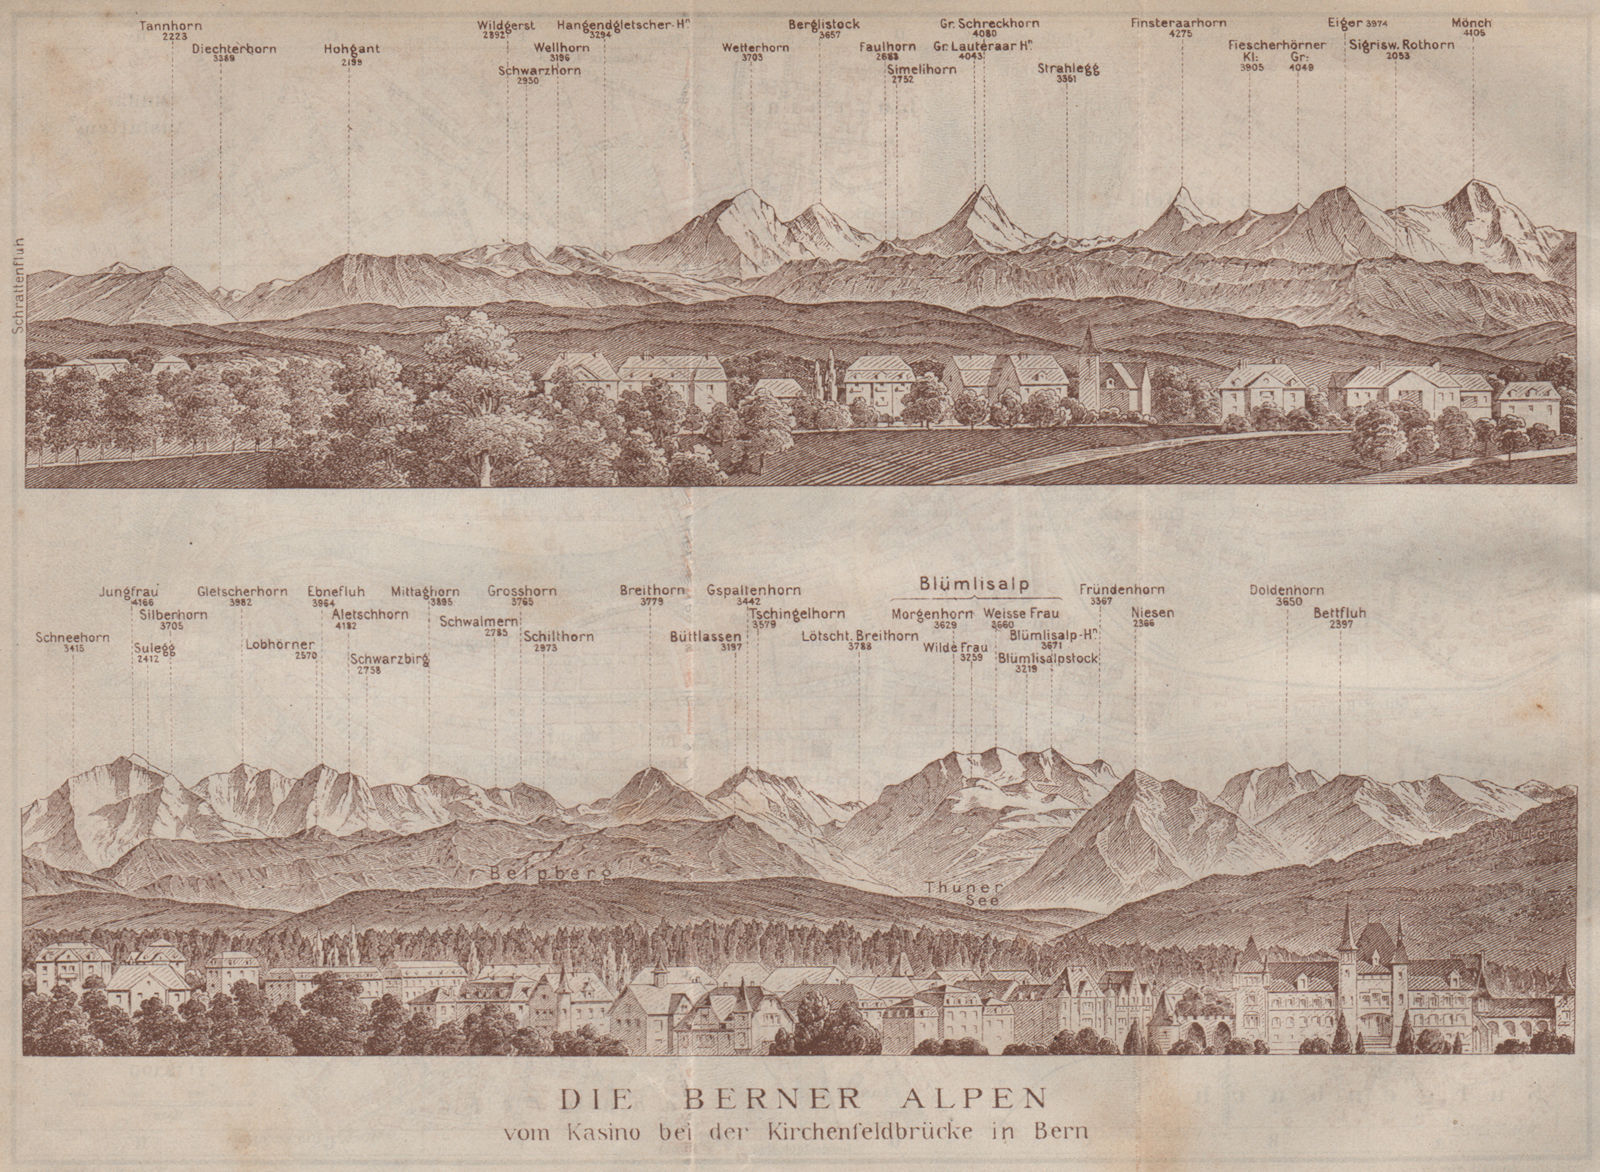 Associate Product PANORAMA vom/from BERN/Berne. Blumisalp Eiger Jungfrau Gletscherhorn 1913 map